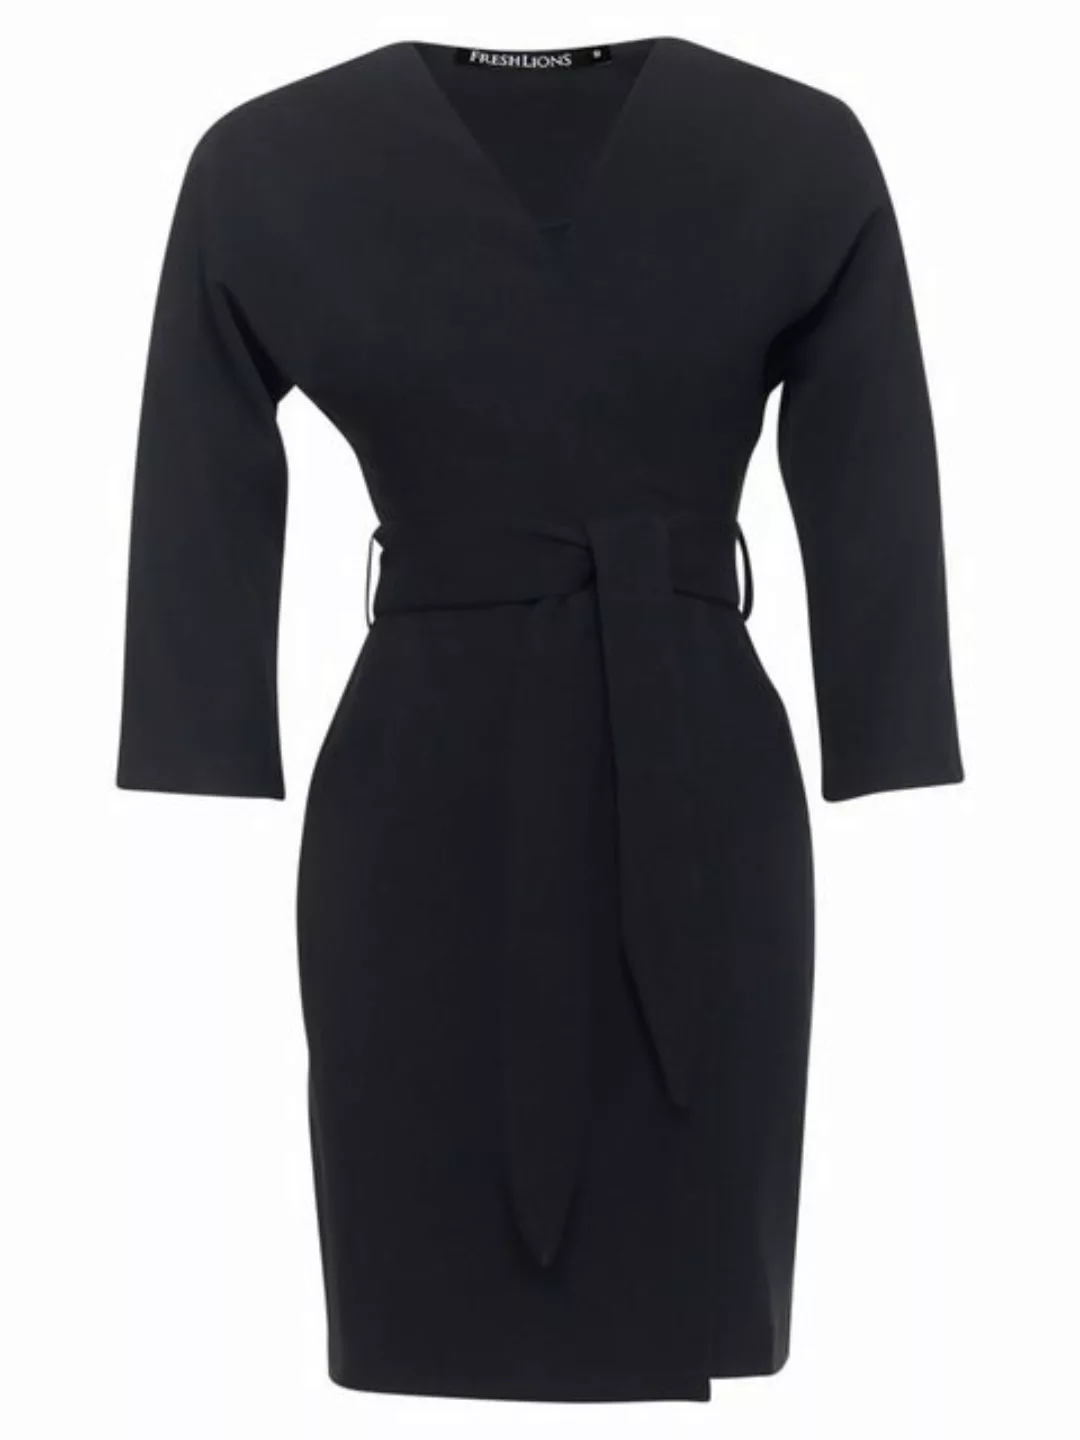 Freshlions Blusenkleid Kleid 'NADJA' Schwarz Größe L Wickel-Design günstig online kaufen